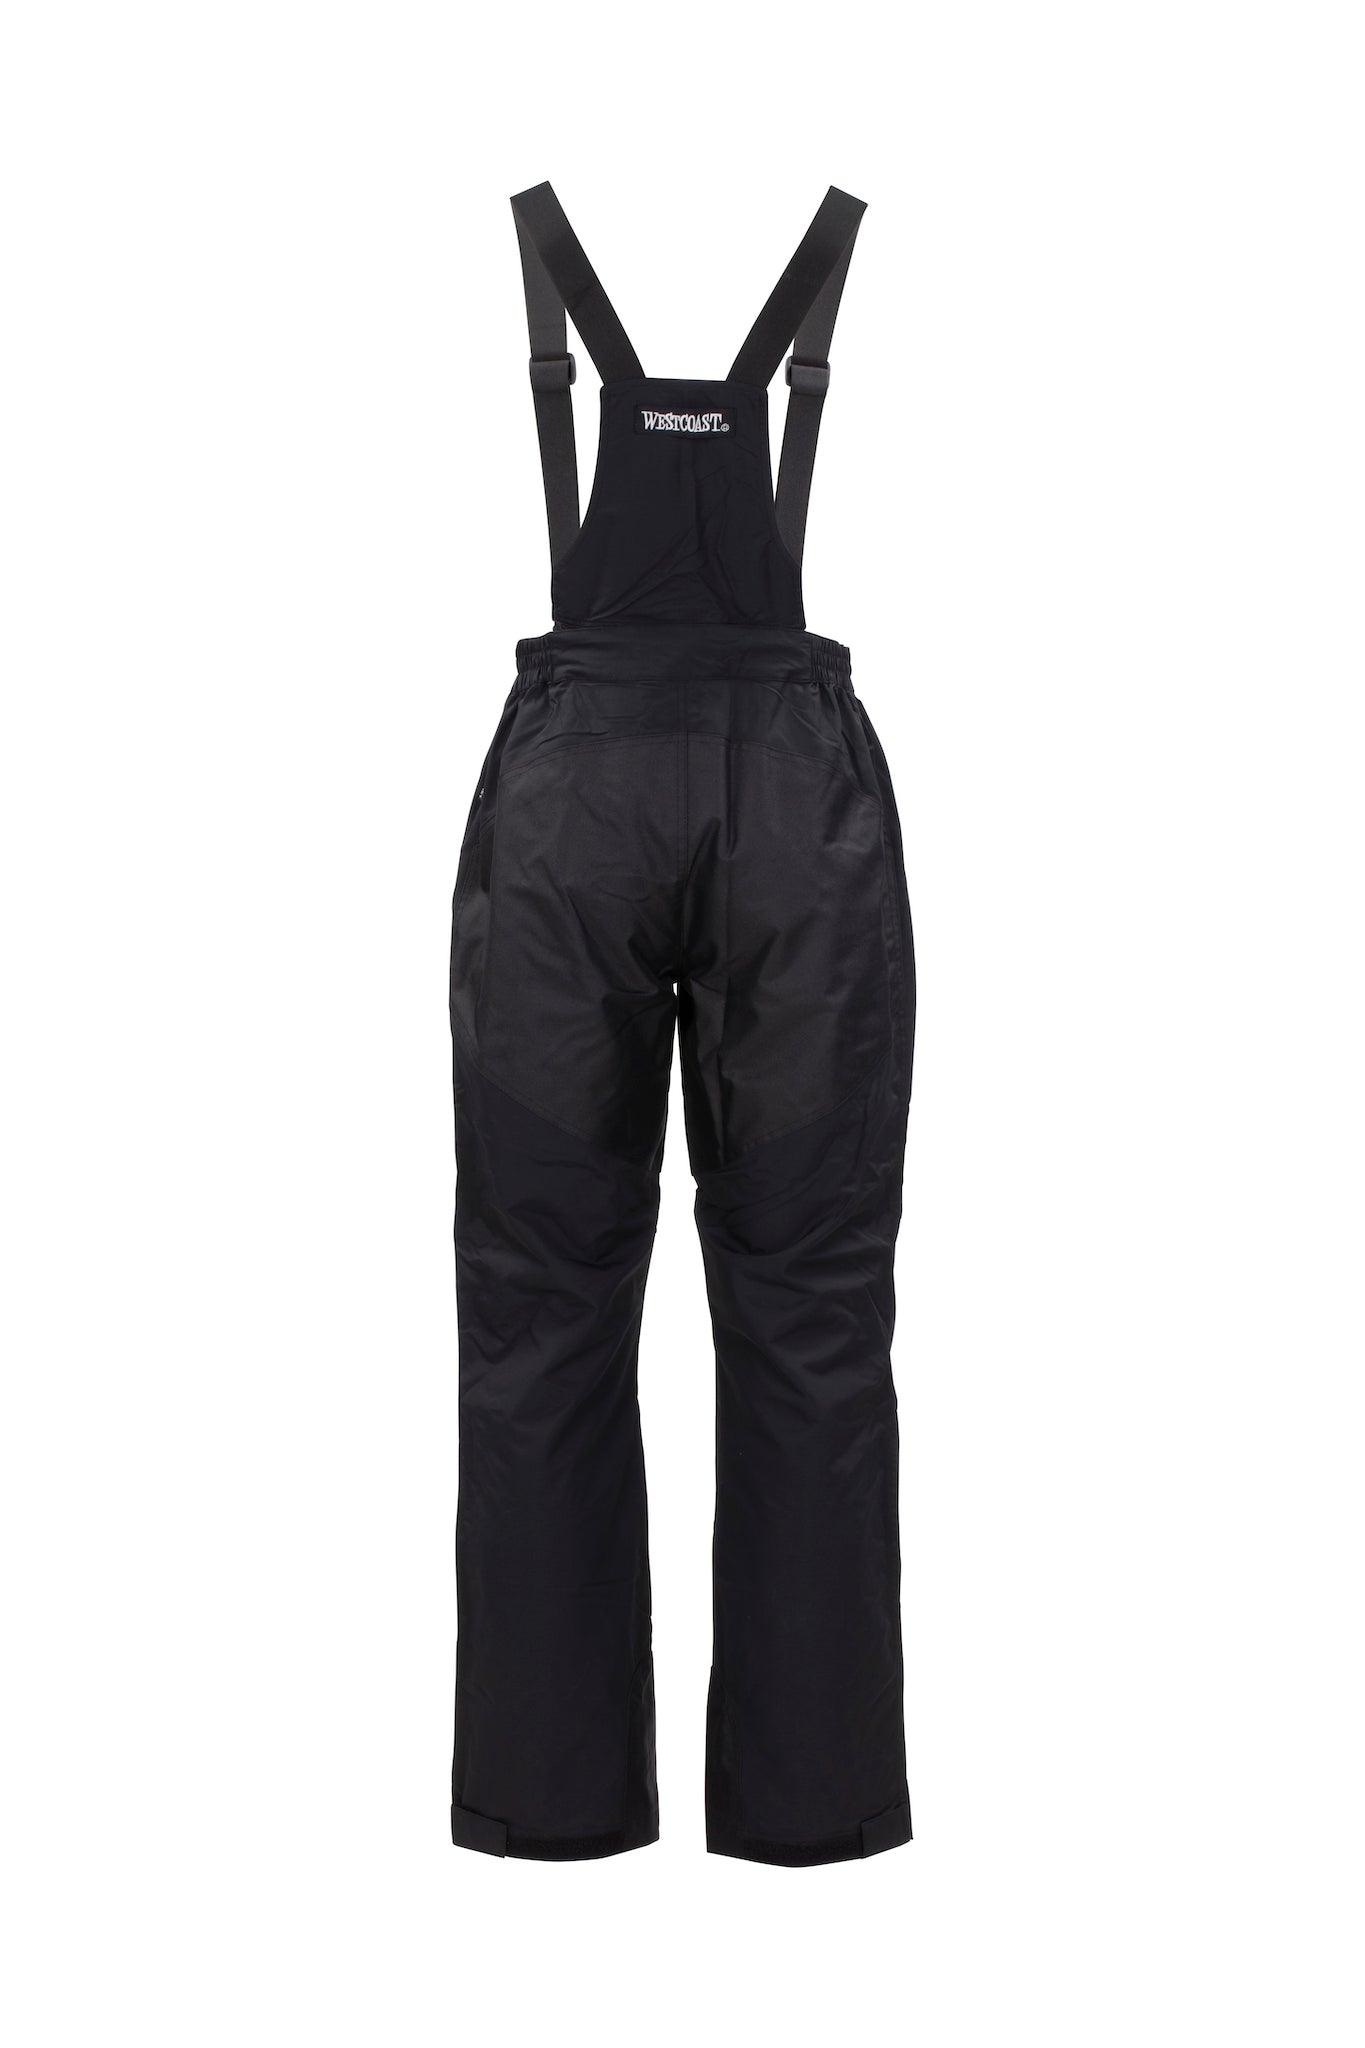 WESTCOAST Women's/Men's (Unisex) Foul Weather Gear CREW Pants - WESTCOAST Swedish Sailingwear